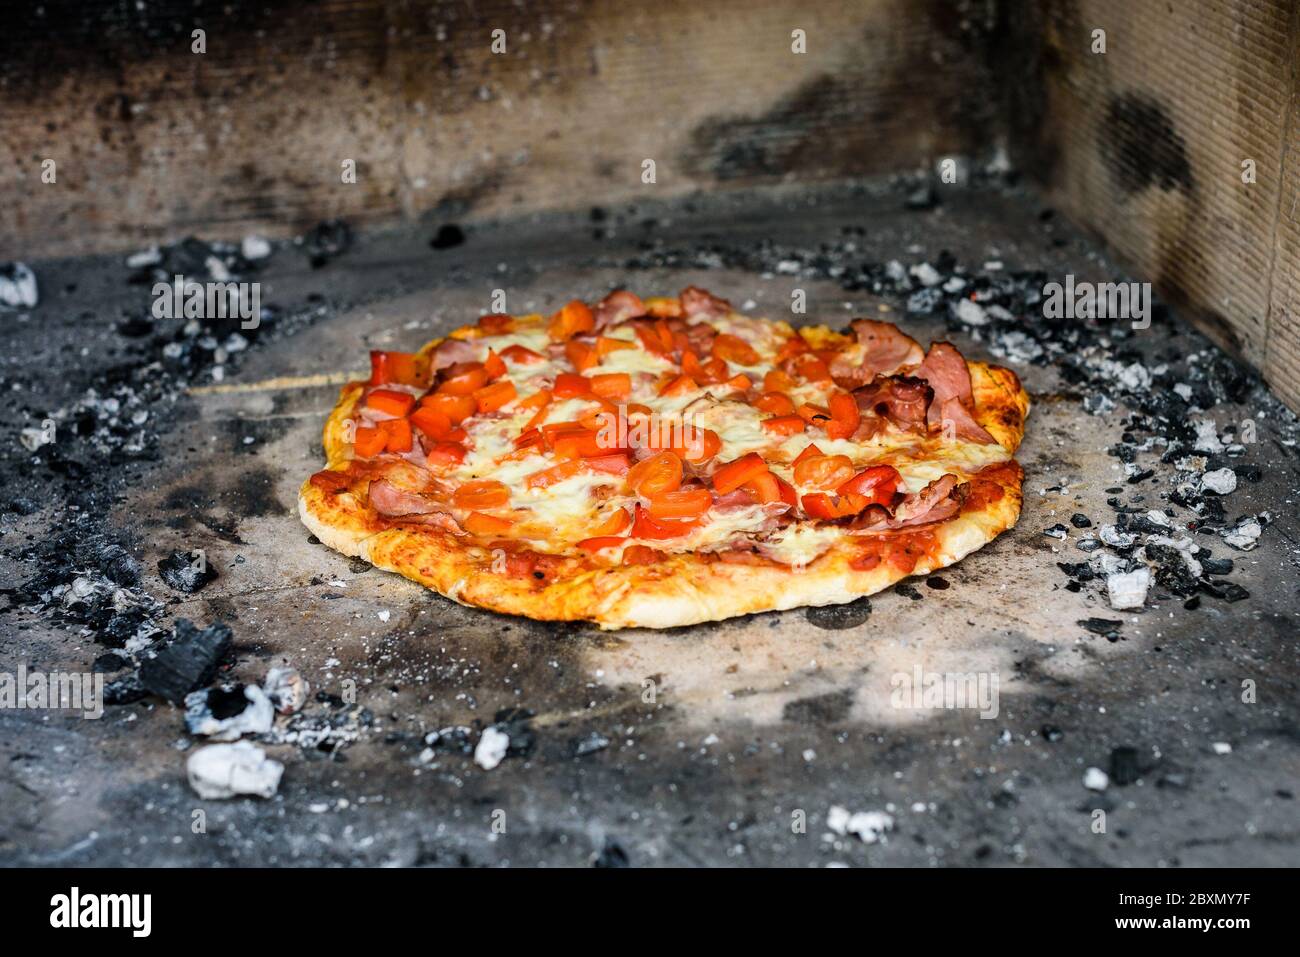 Fabrication de pizza italienne maison dans un four en brique avec cheminée. Fabrication de pizza traditionnelle dans un foyer en brique de pierre avec bois de feu et charbons. Fini Banque D'Images